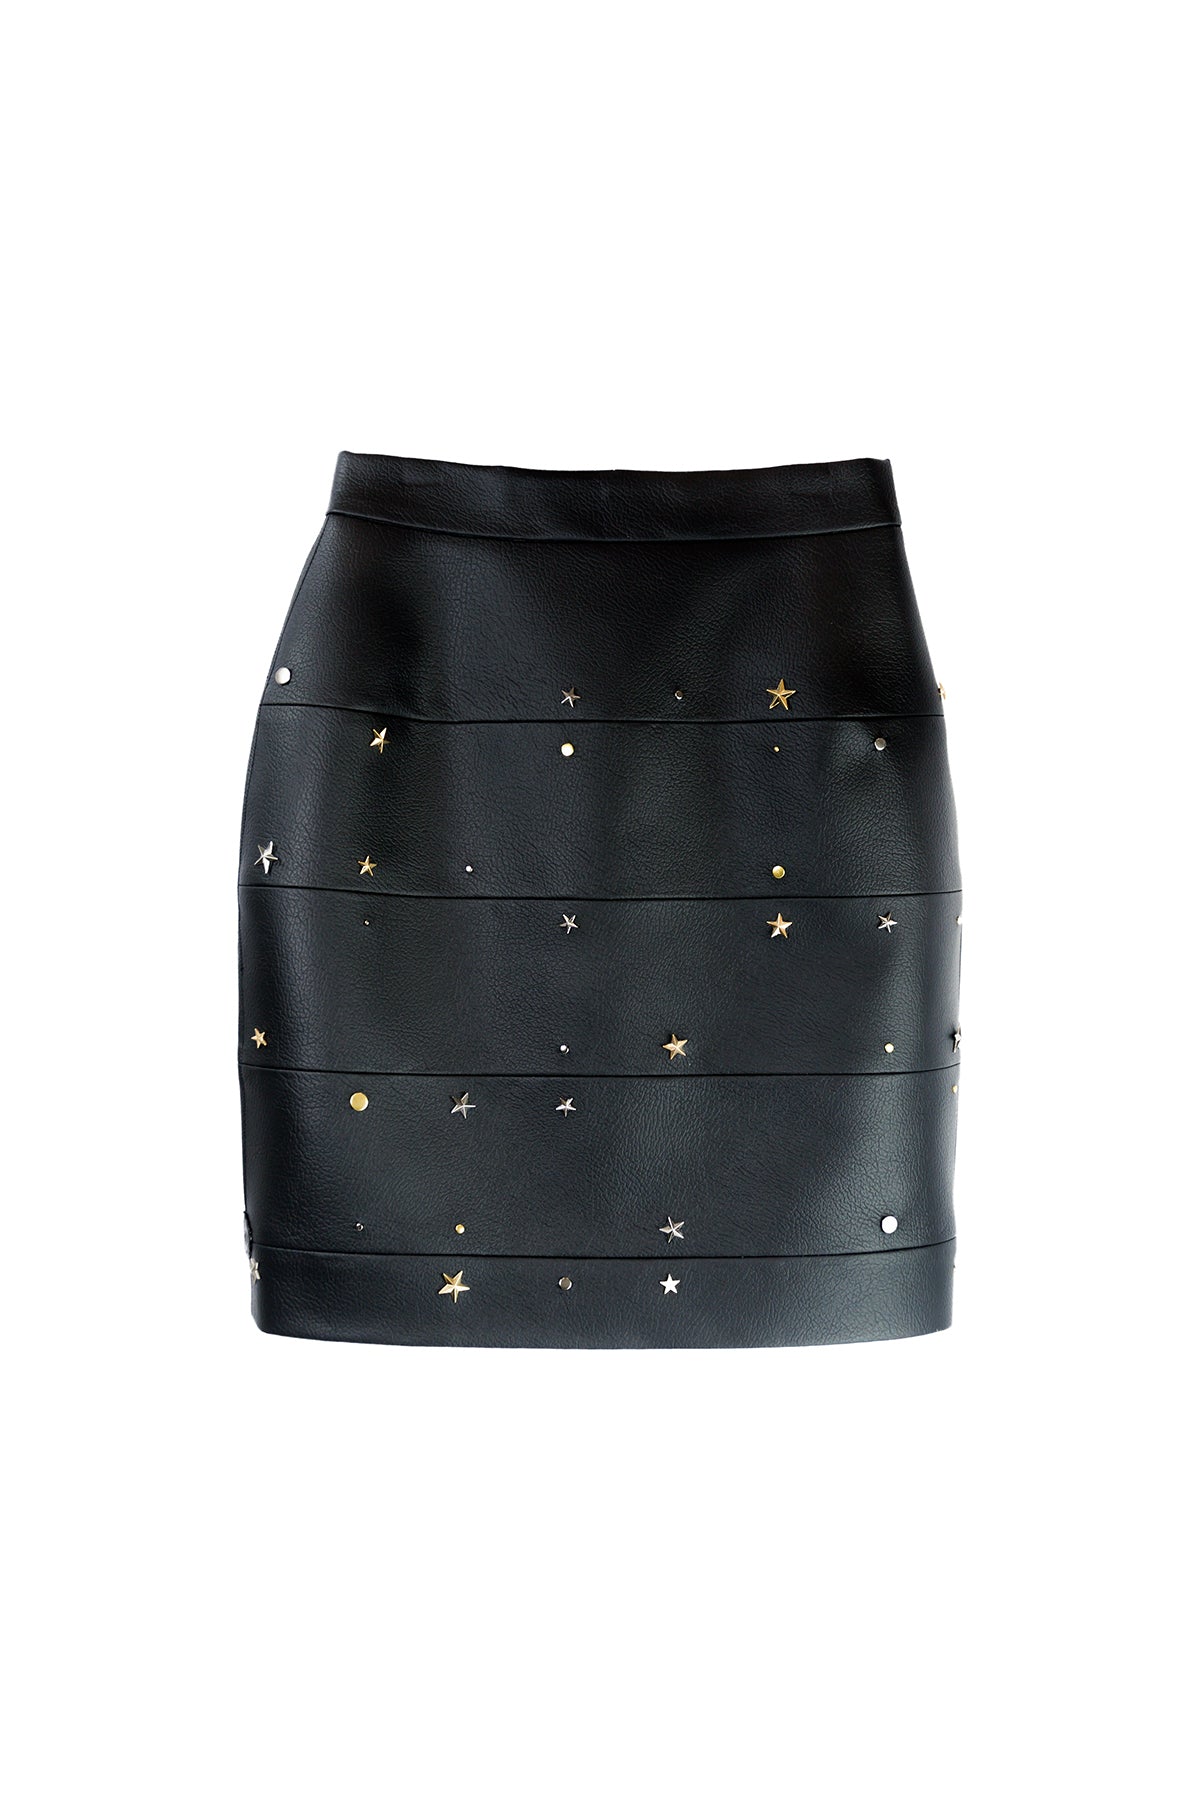 Panel Skirt in Imitation Leather "SPACE" - Black - Manuel Essl Design